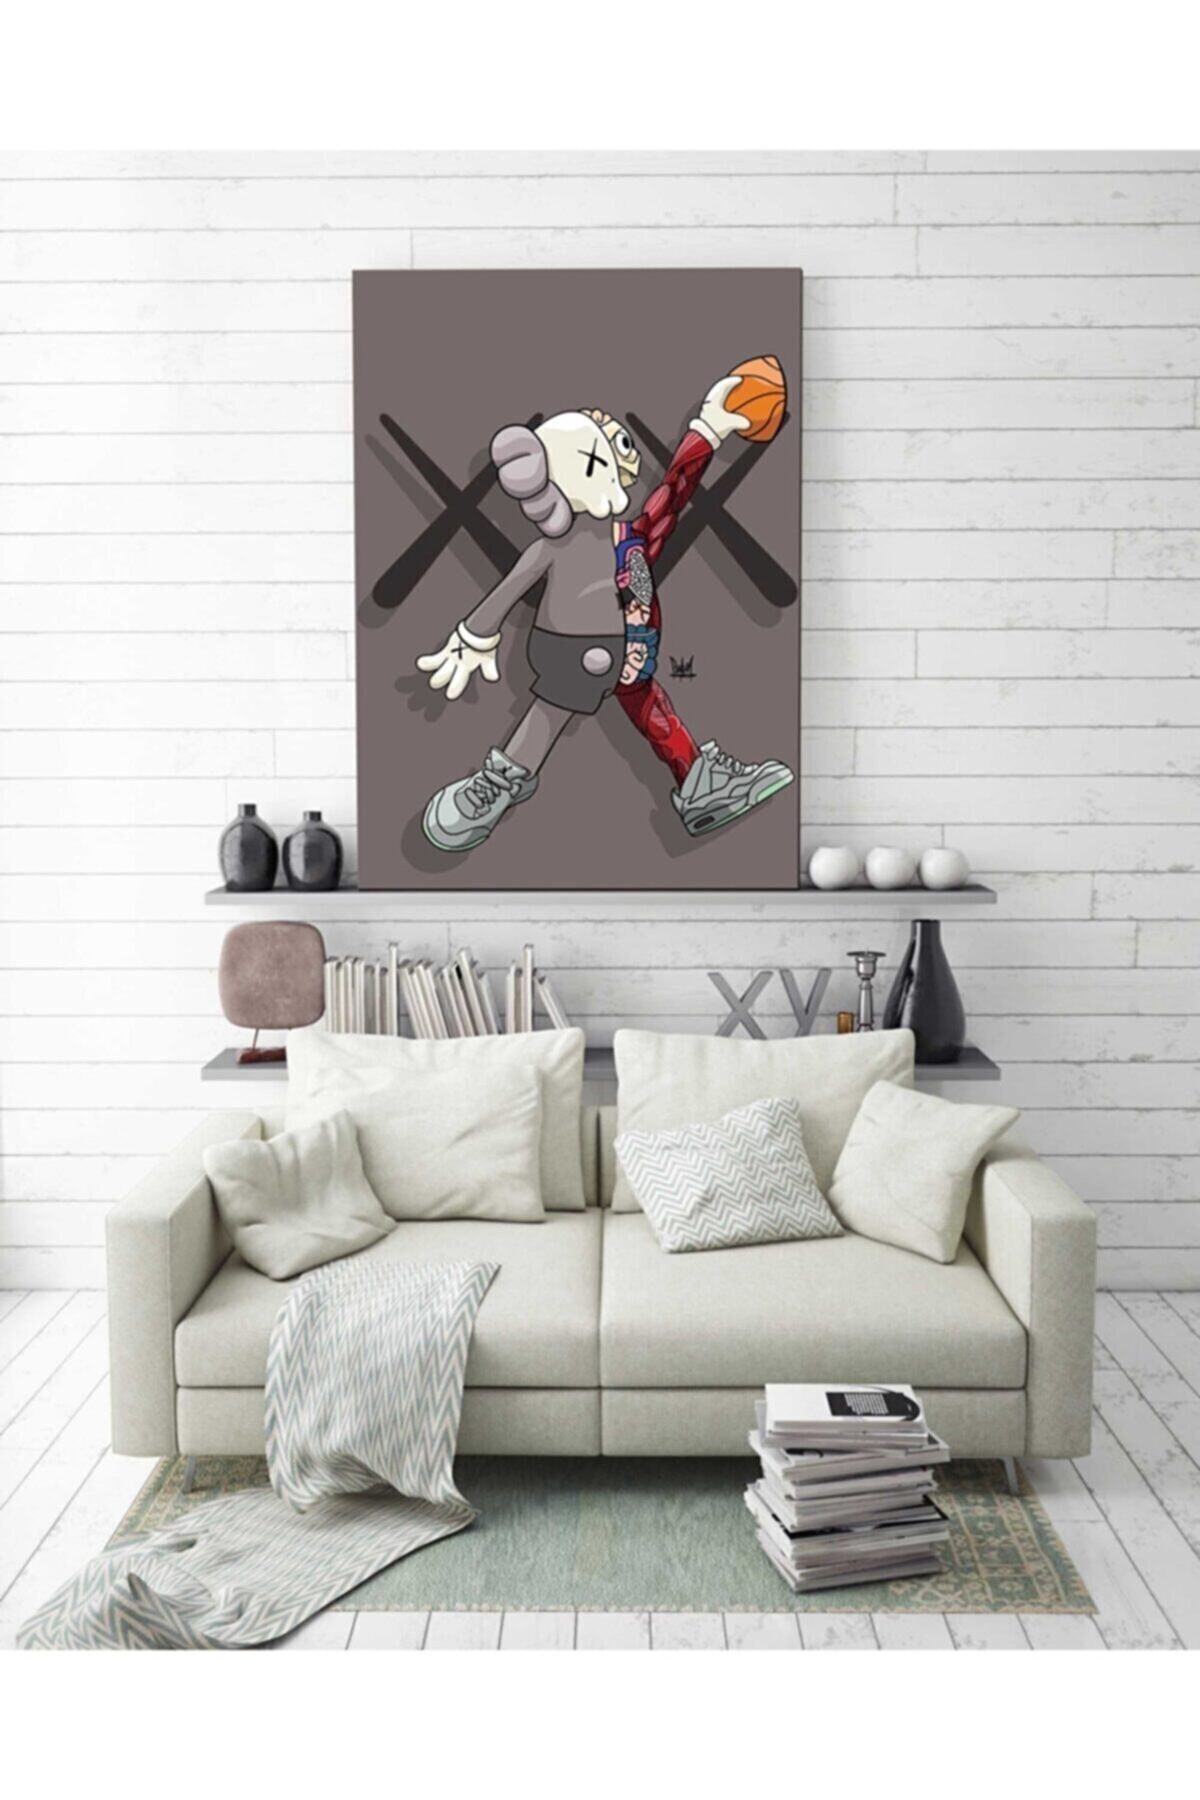 VeraStore Kaws Basketball Duvar Dekorasyon Kanvas Tablo